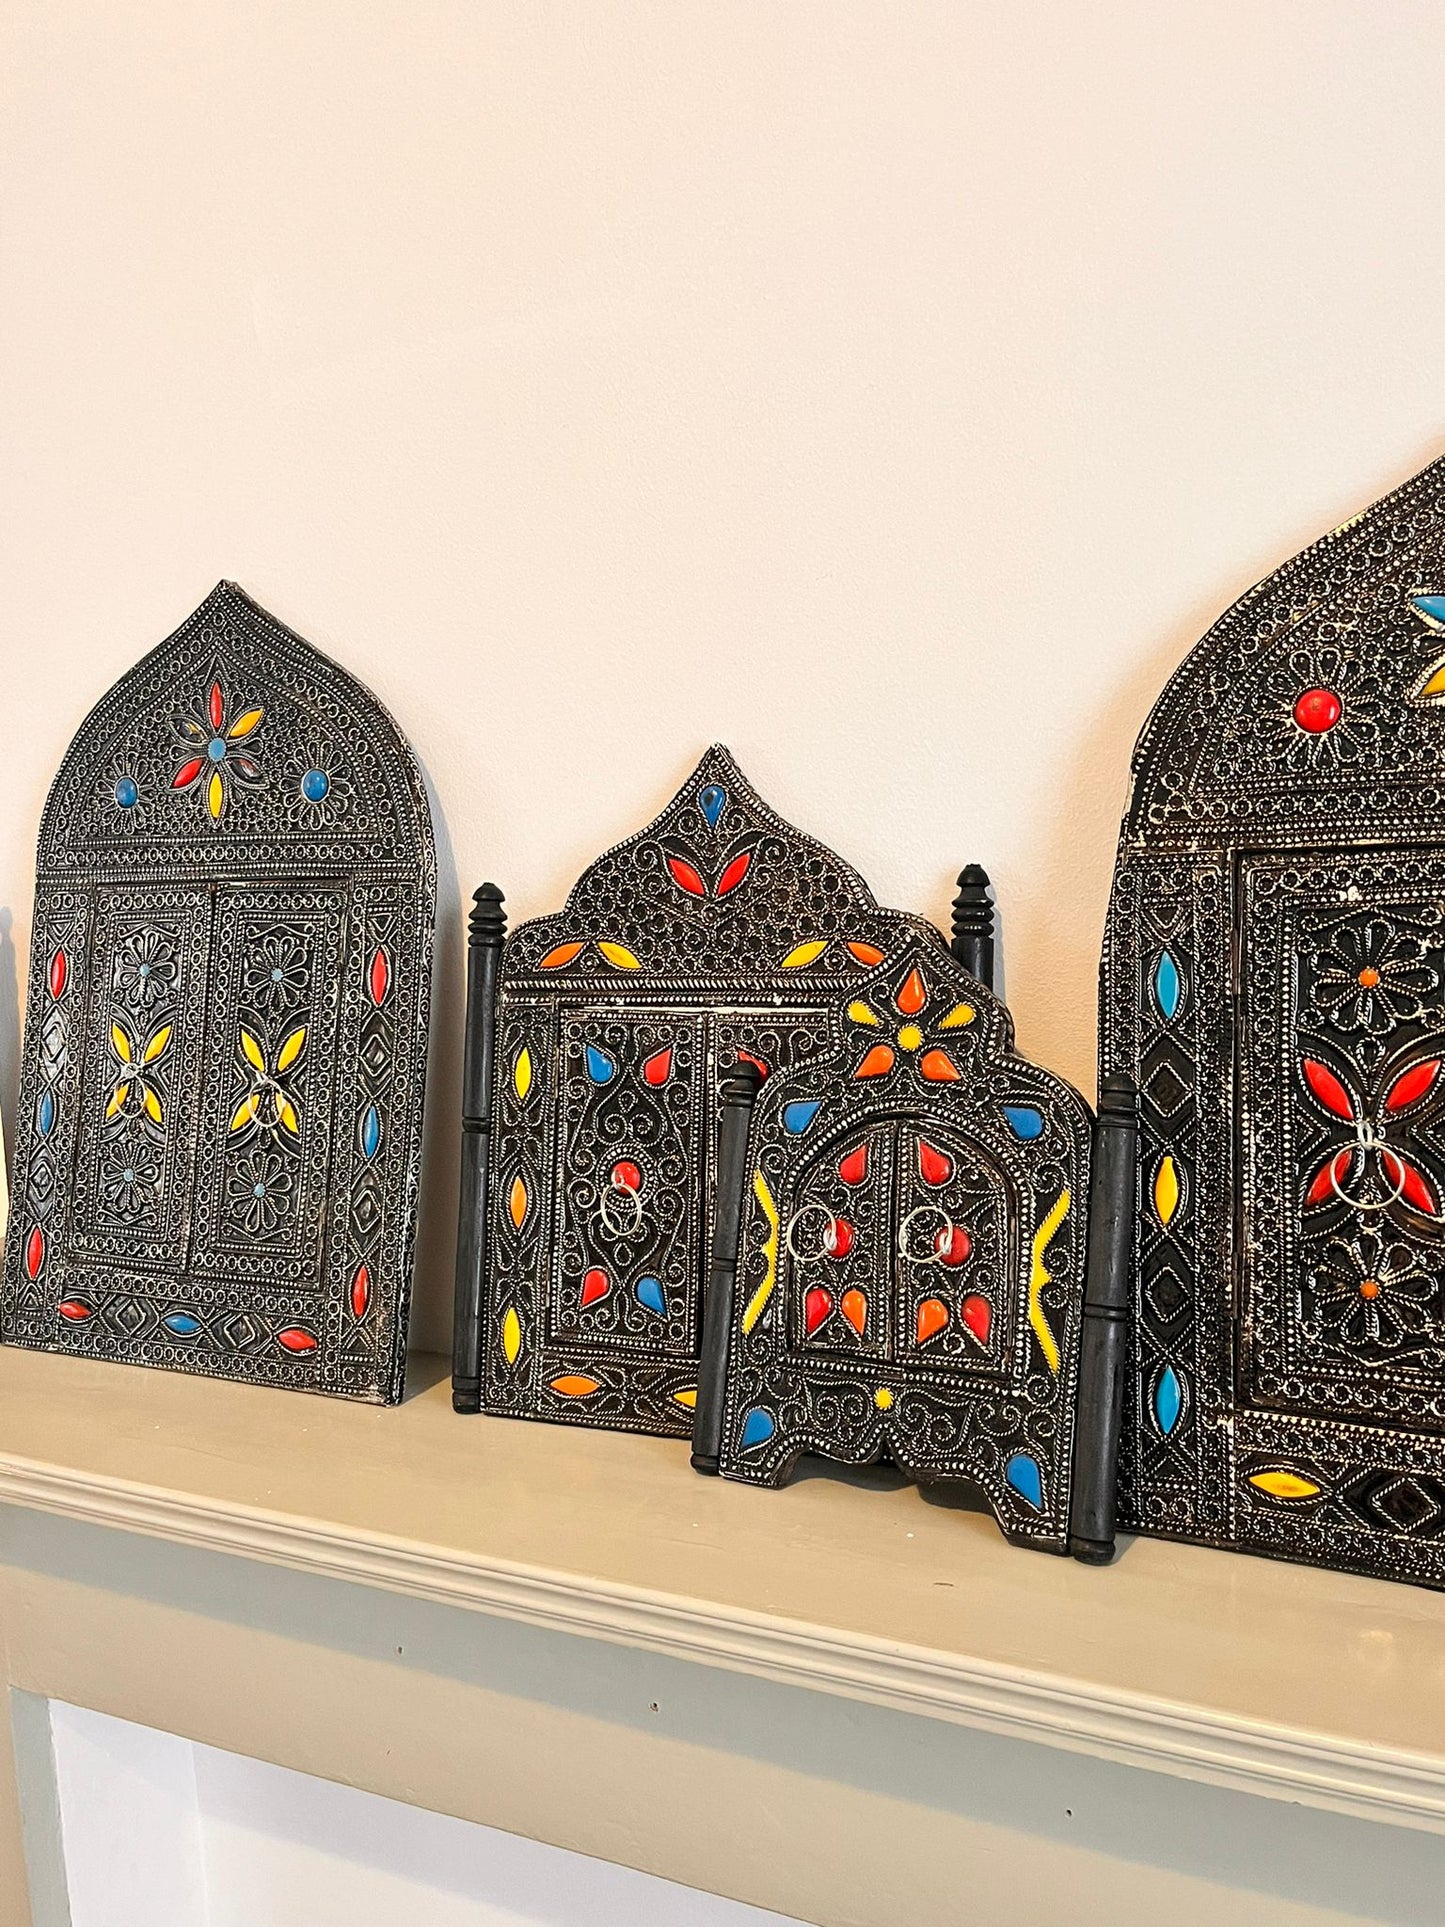 Handgemaakte Marokkaanse Spiegel - Metaal en Steen, Drie Maten Beschikbaar: Groot (42x28cm), Medium (32x26cm), Mini (23x19cm)